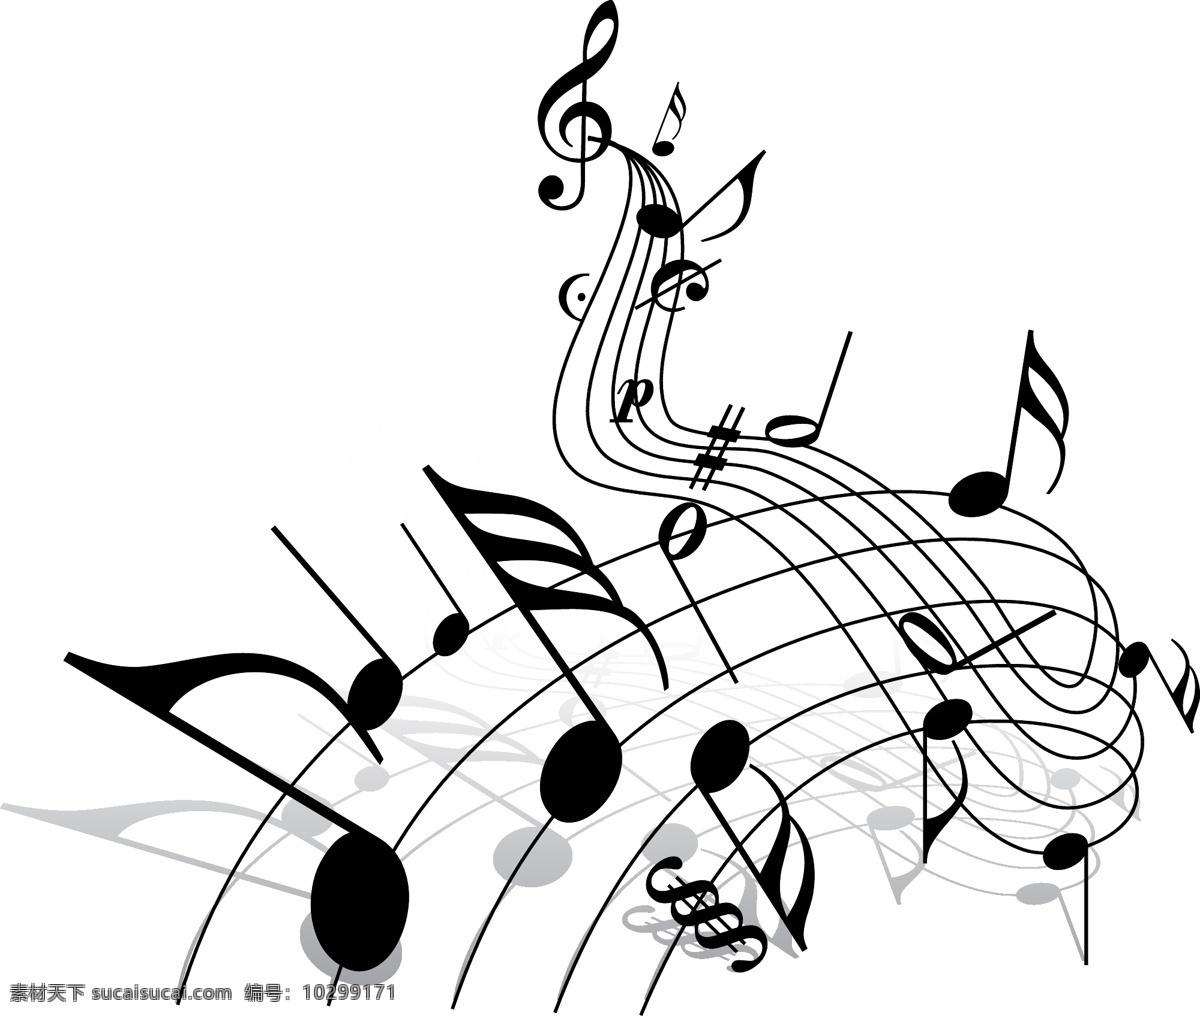 矢量音乐 音乐符号 字符 音乐字符 音标 音符 乐符 矢量音符 文化艺术 舞蹈音乐